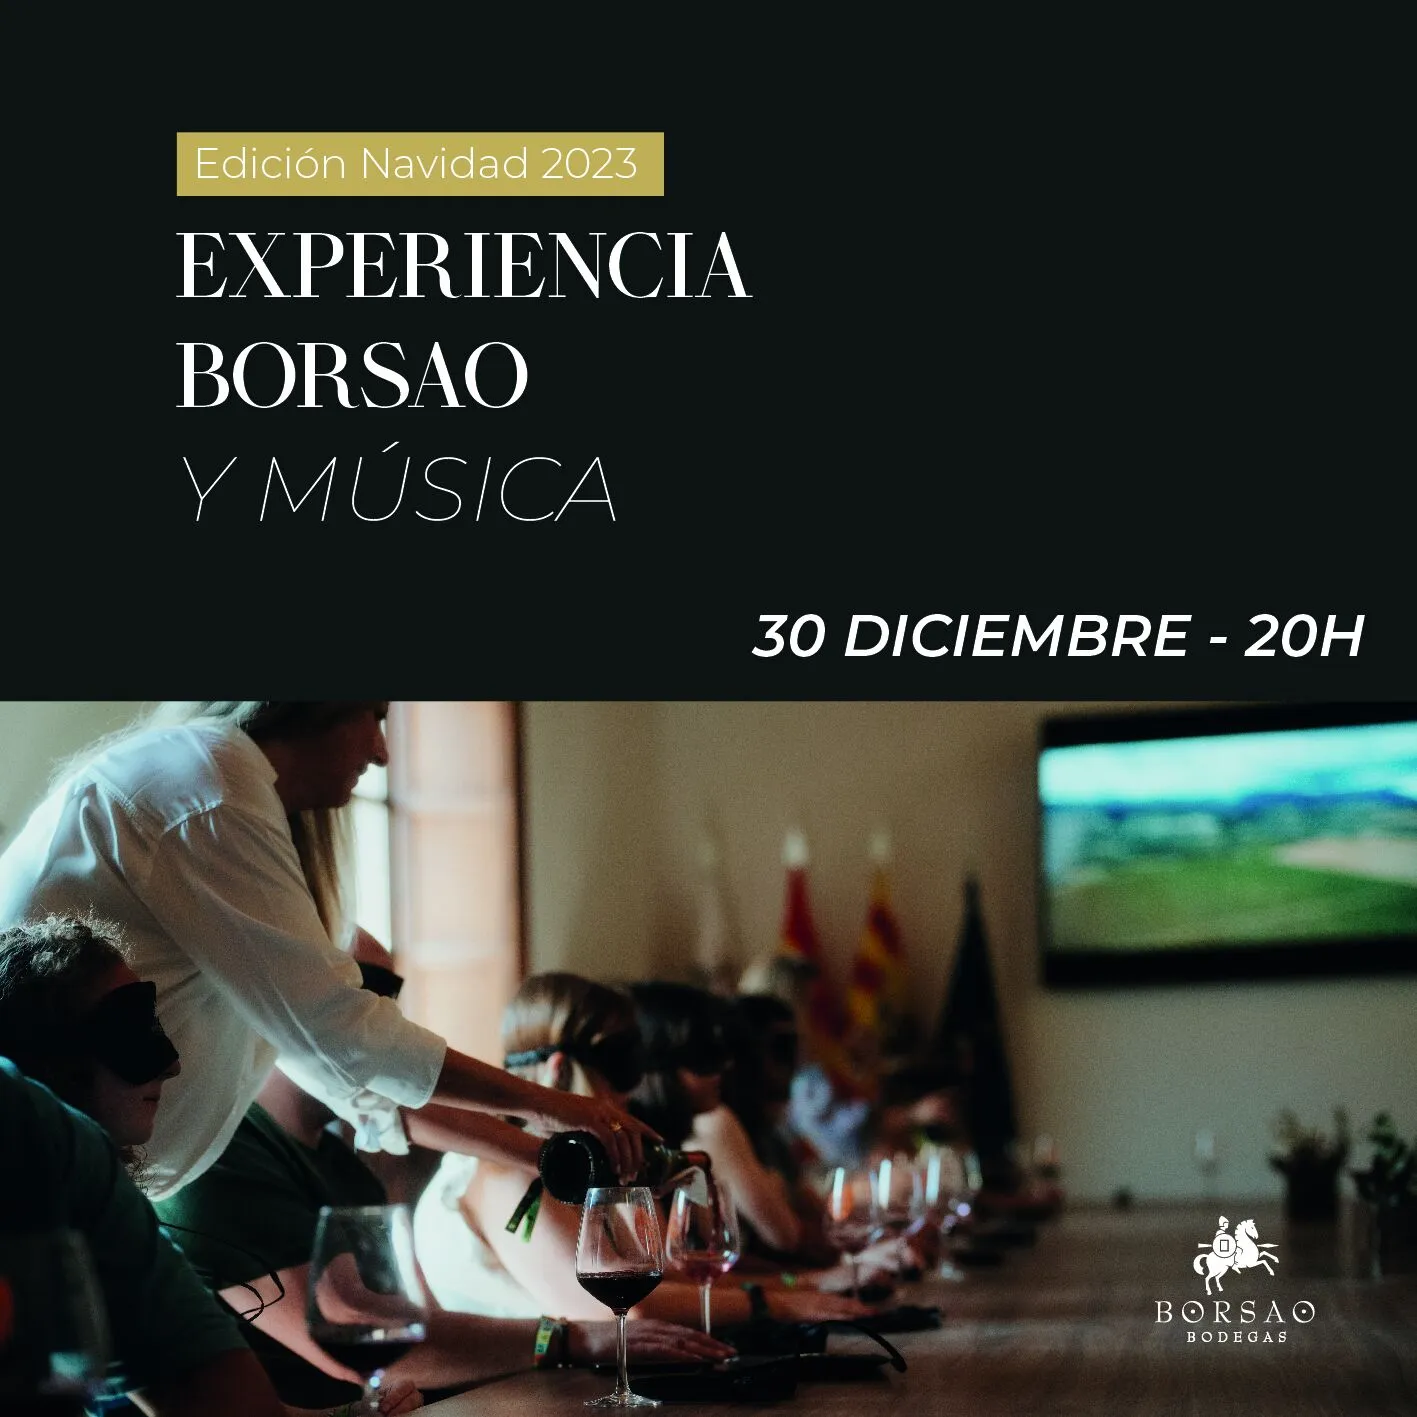 Experiencia-Borsao-y-musica-20h